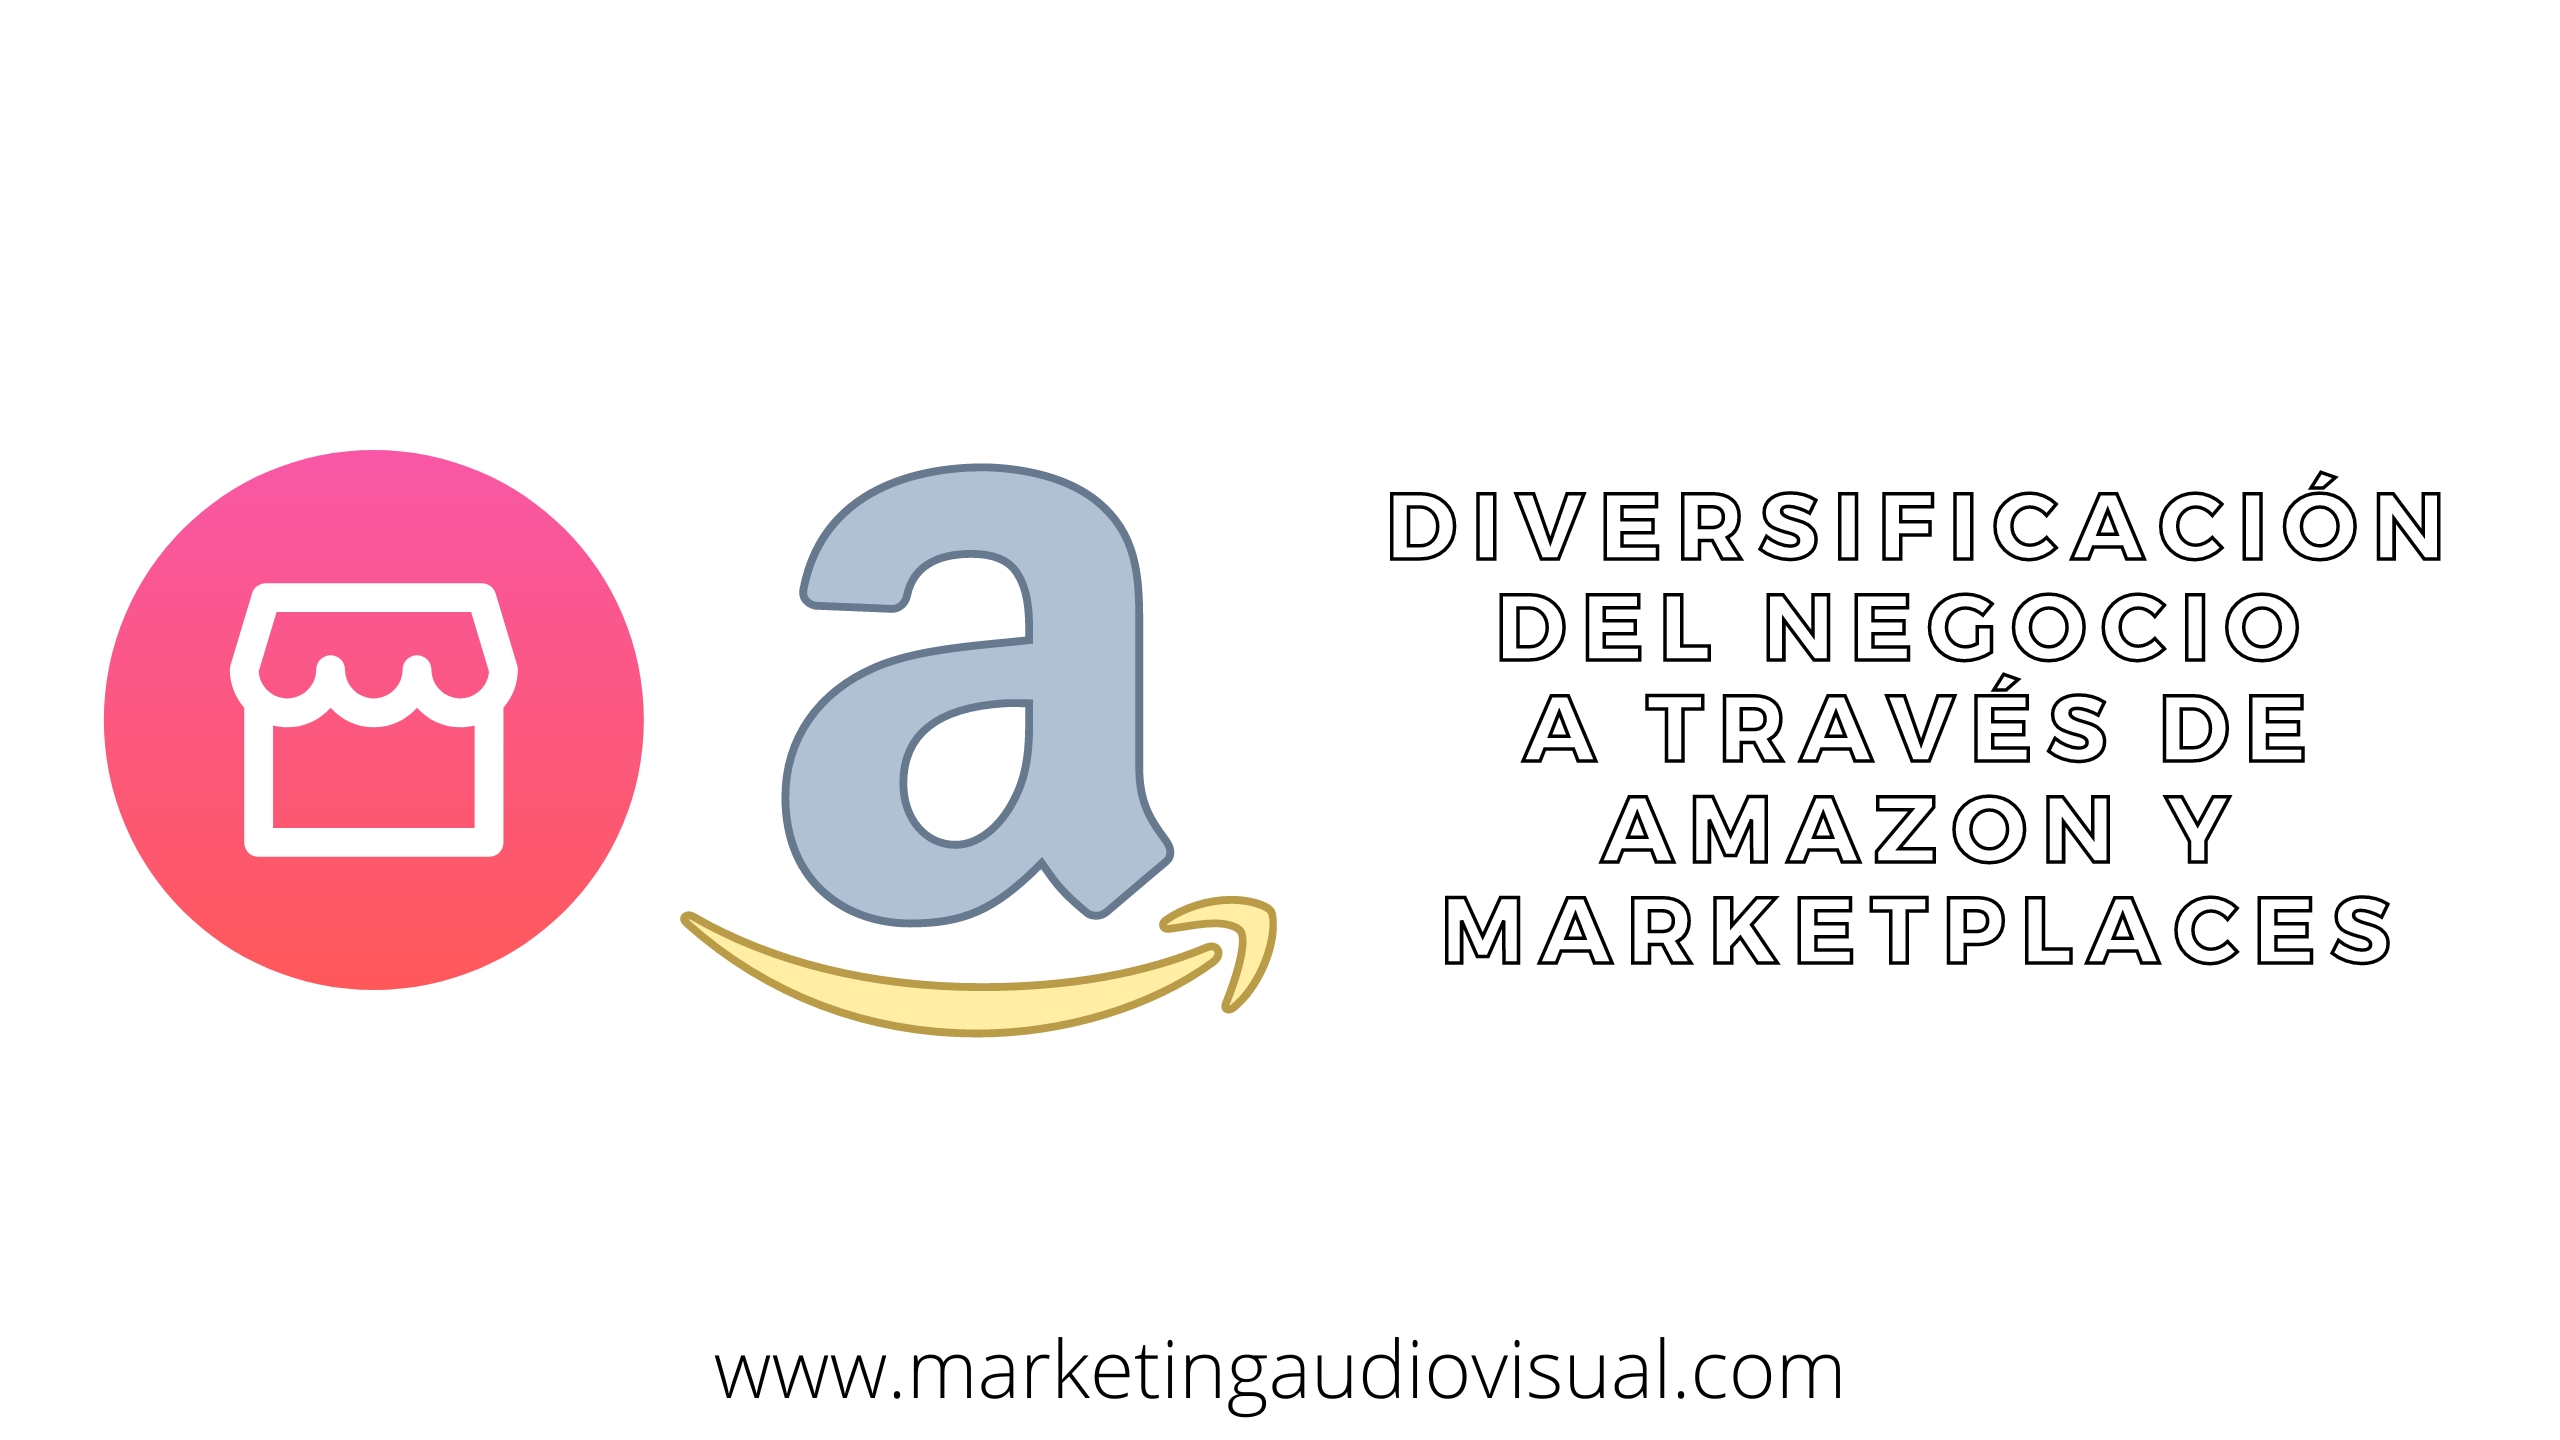 Diversificación del negocio a través de Amazon y marketplaces